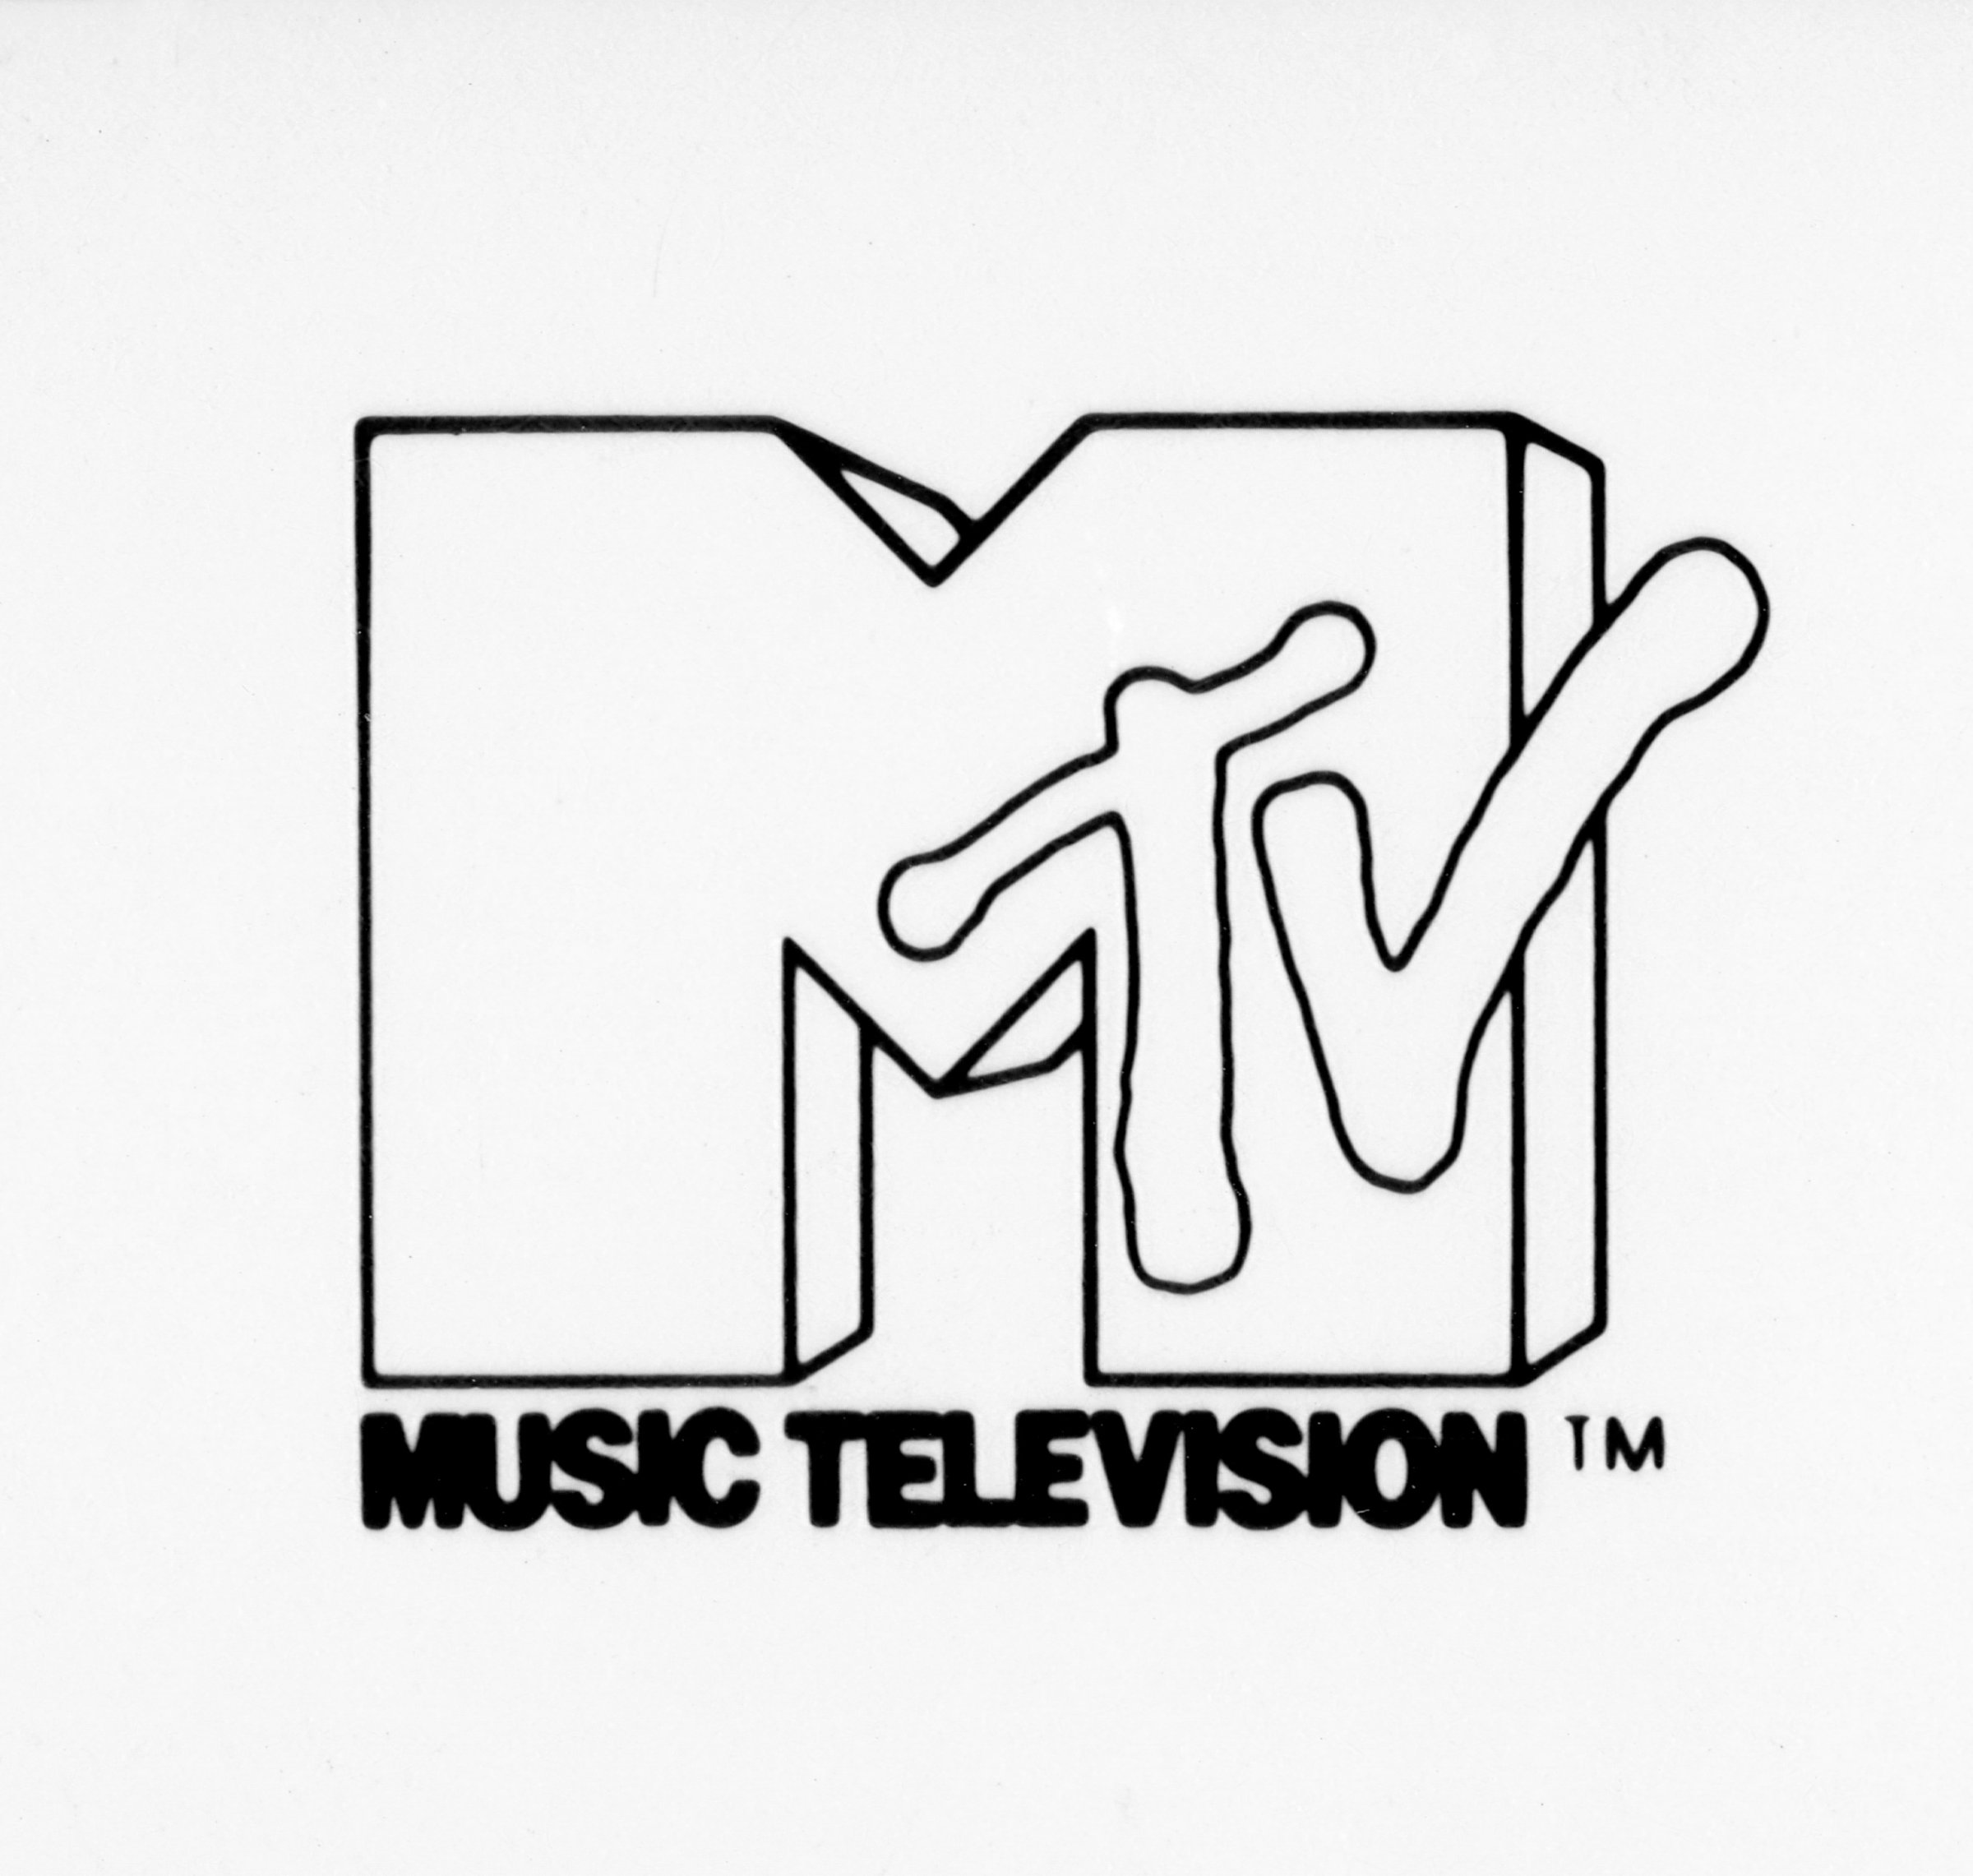 MTV's logo circa 1982.